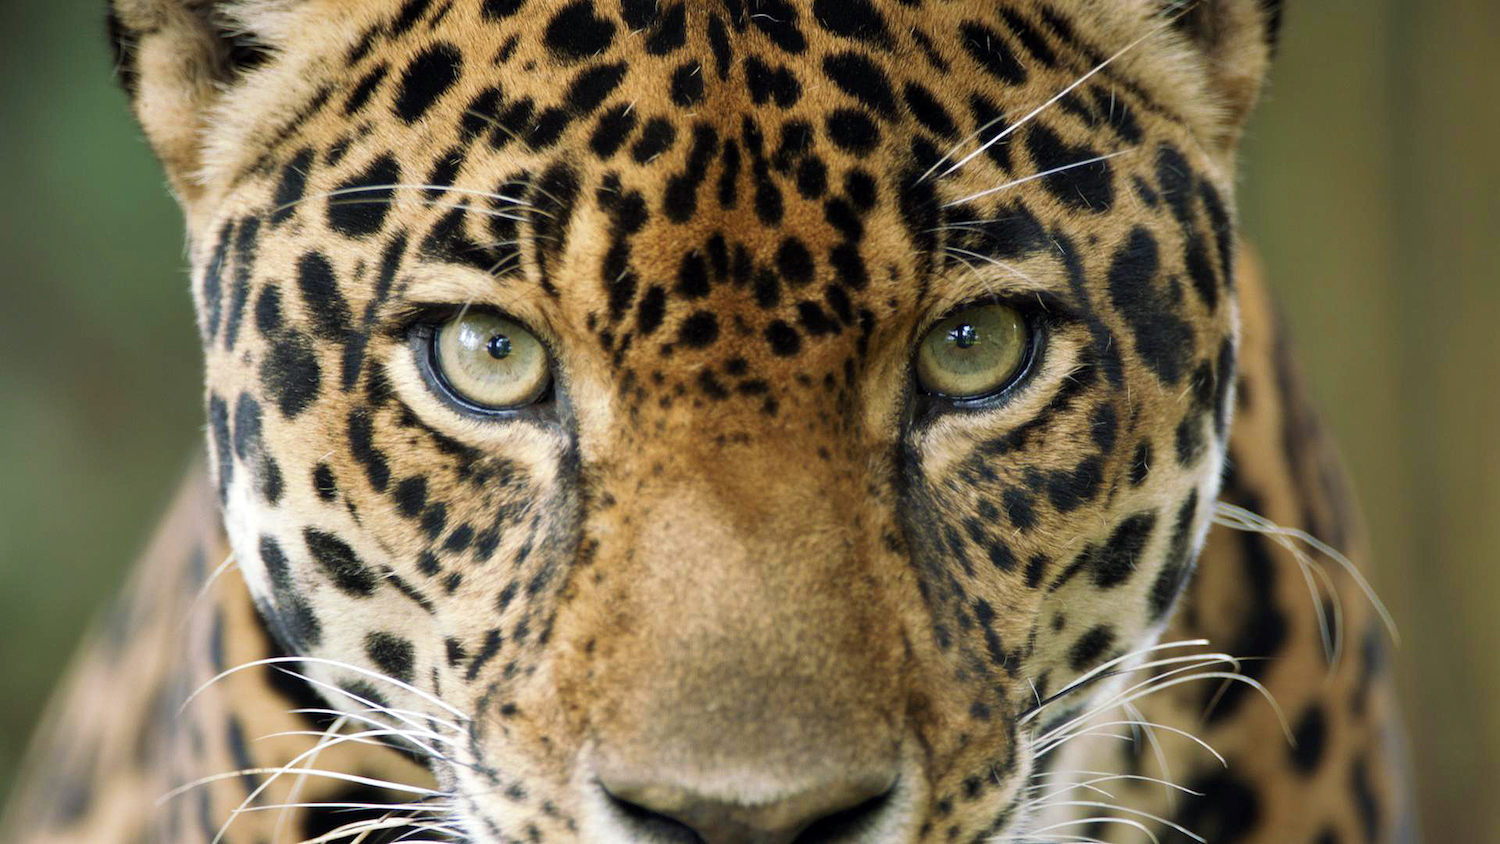 Las alertas recientes de deforestación en Colombia amenazan el hábitat de los jaguares. Foto: PROCAT Colombia.